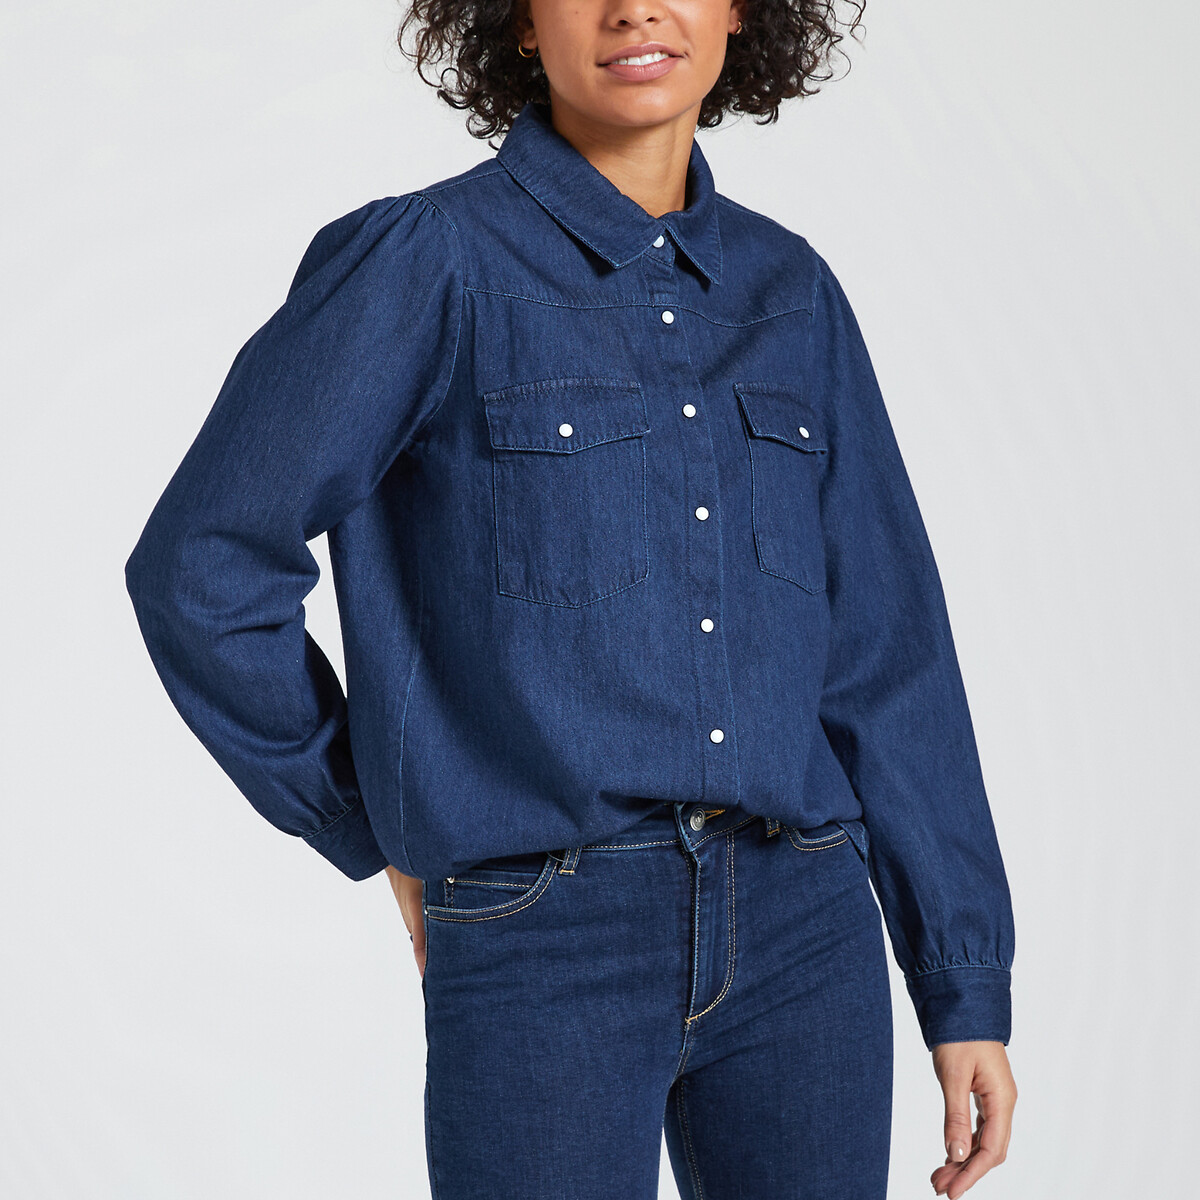 Рубашка из джинсовой ткани с длинными рукавами XS синий рубашка из джинсовой ткани с длинными рукавами xs синий